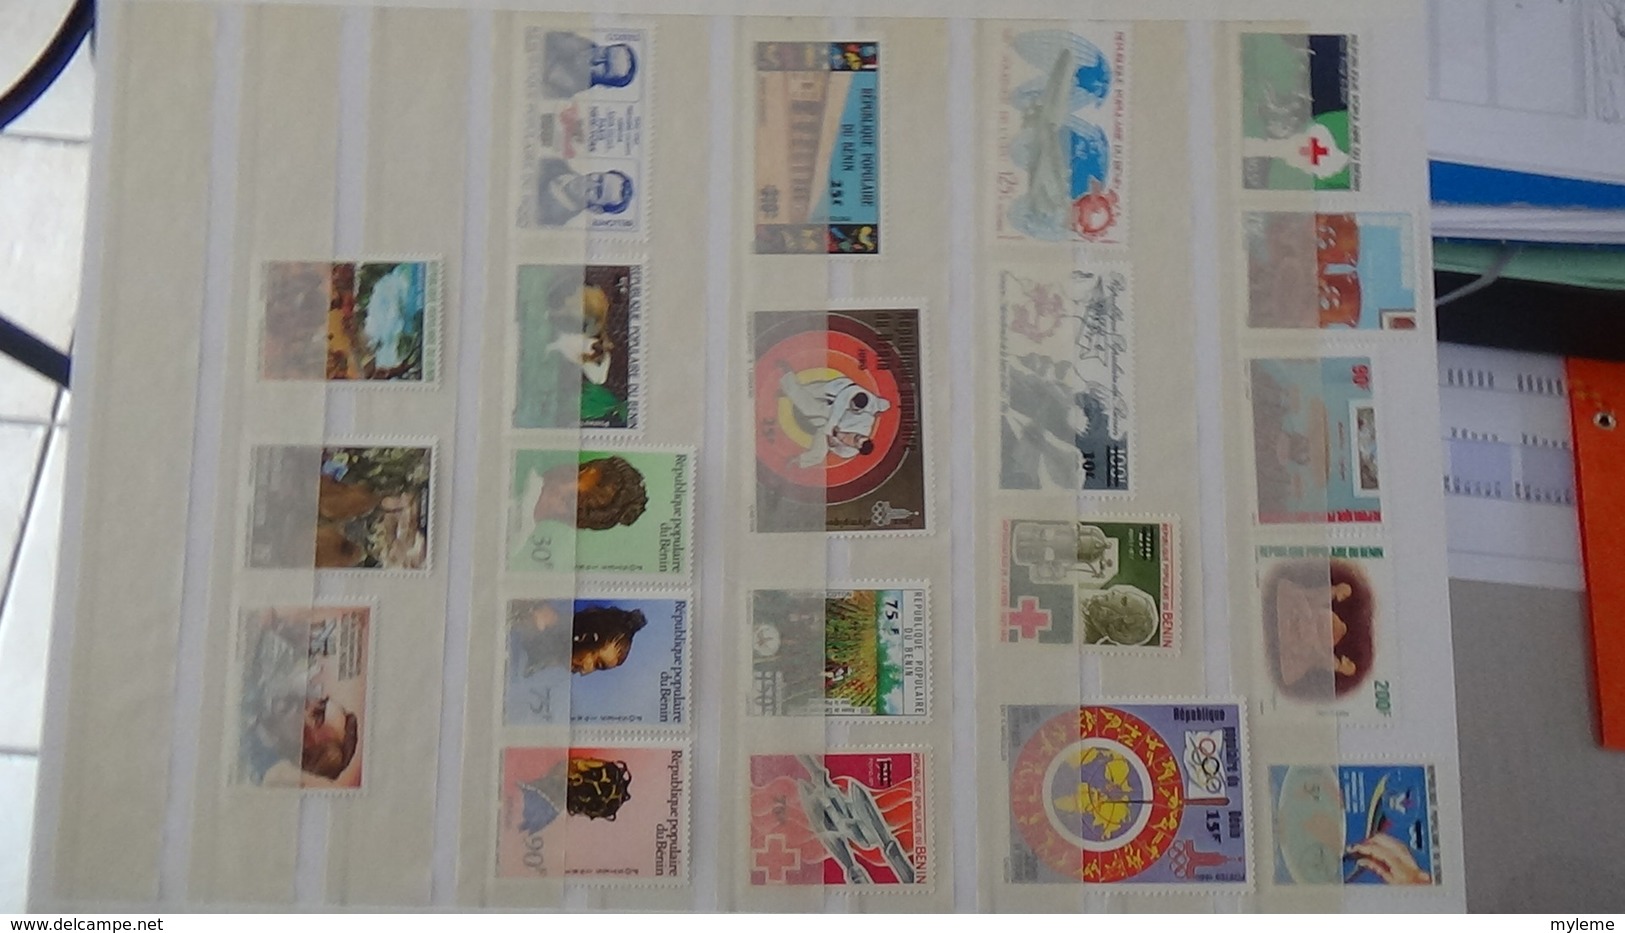 C91 Très belle collection timbres et blocs ** d'Algérie, Bénion et Burkina Fasso dont bonnes petites valeurs !!!